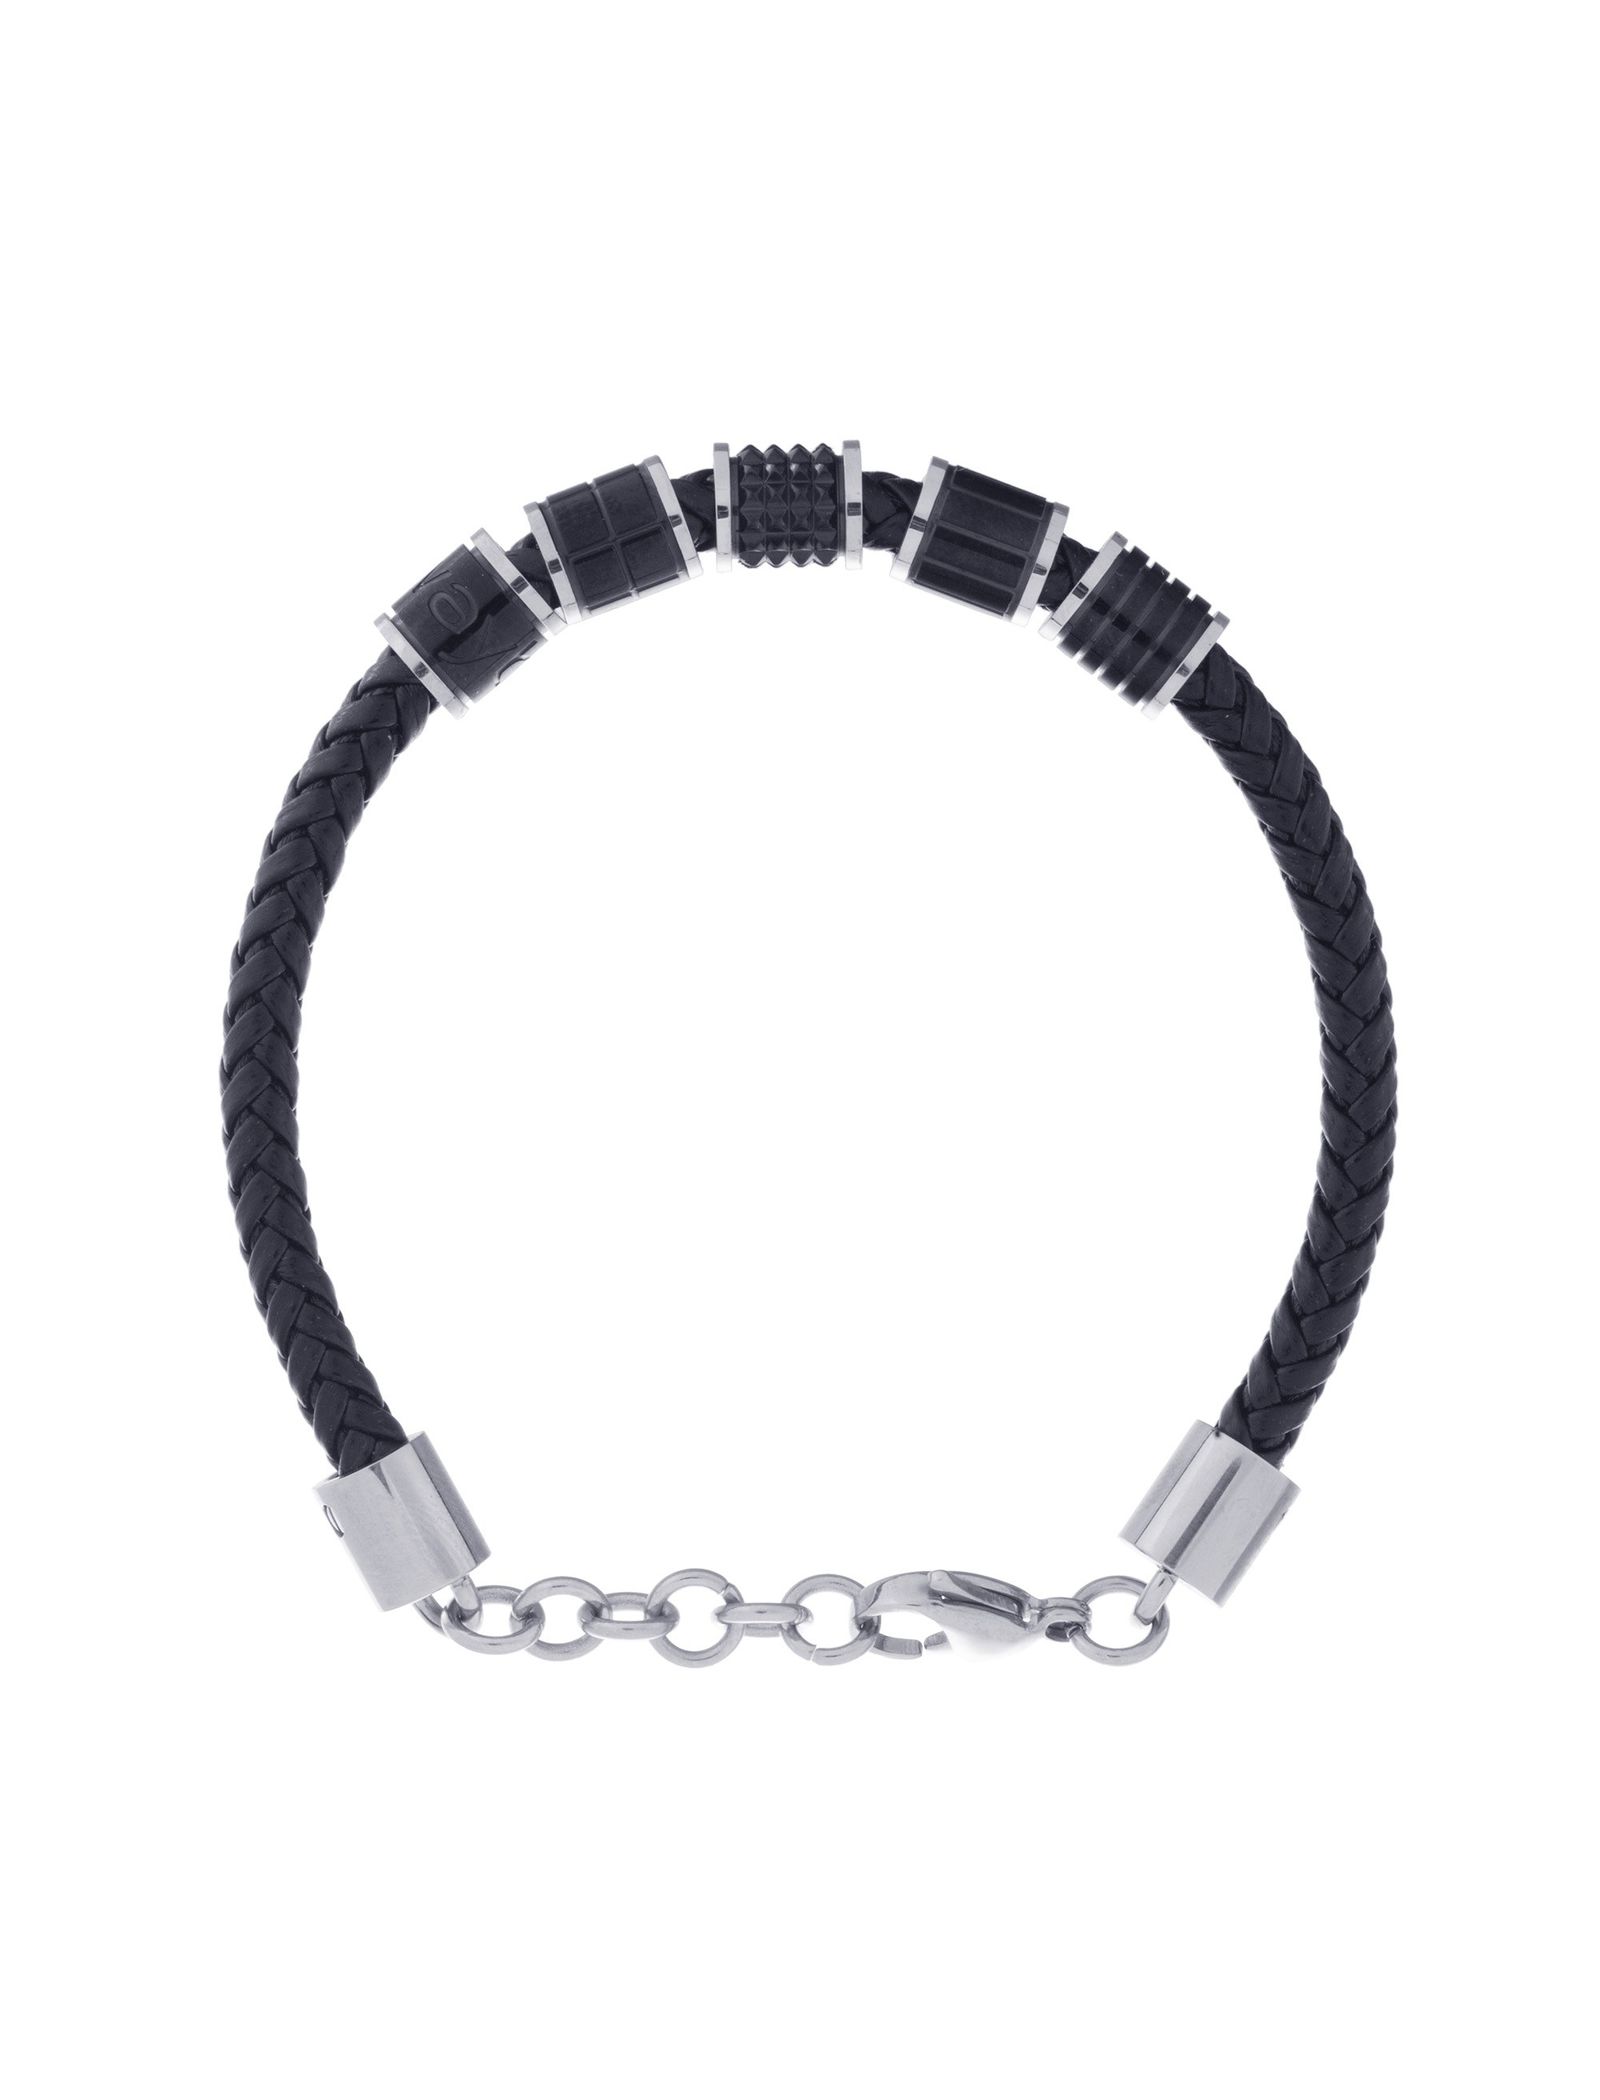 دستبند چرمی مردانه - برازوی تک سایز - Black - 3